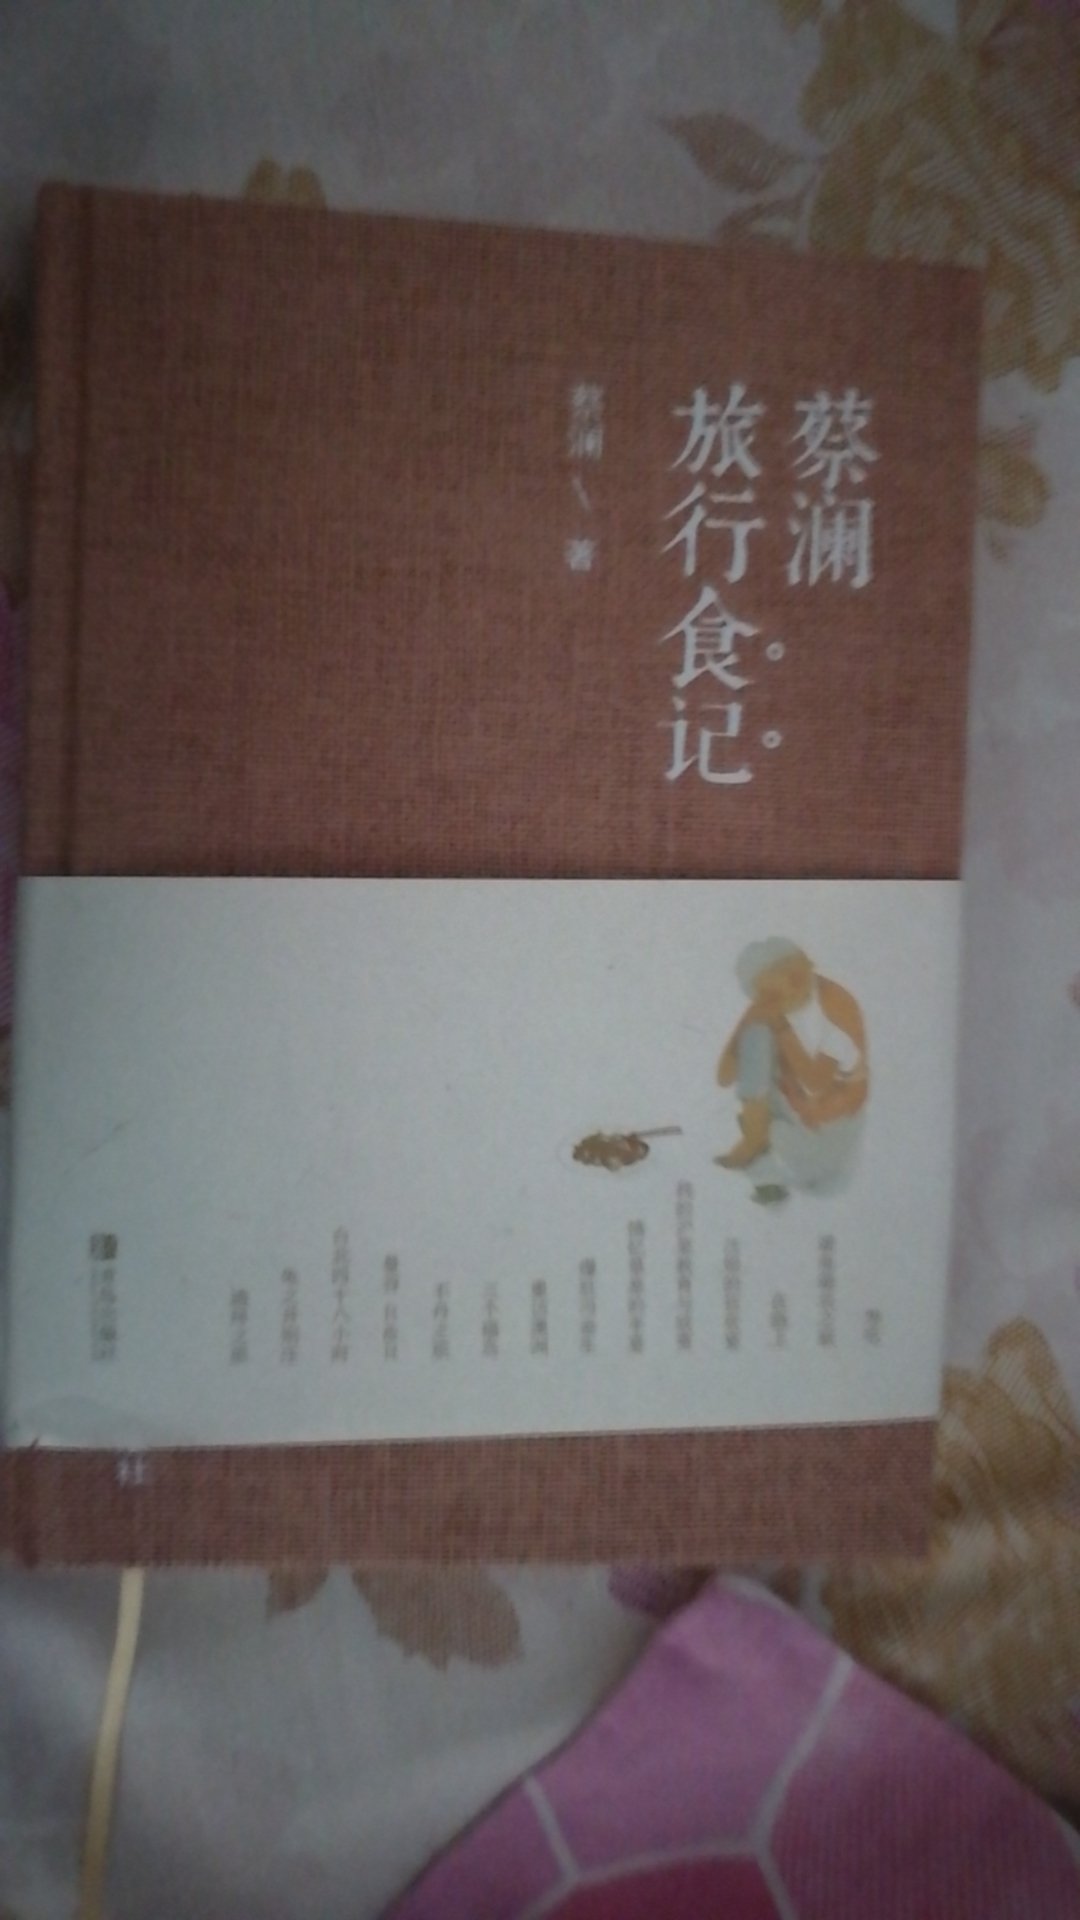 书的质量很好，快递杨大庆每次都很及时，棒棒哒！